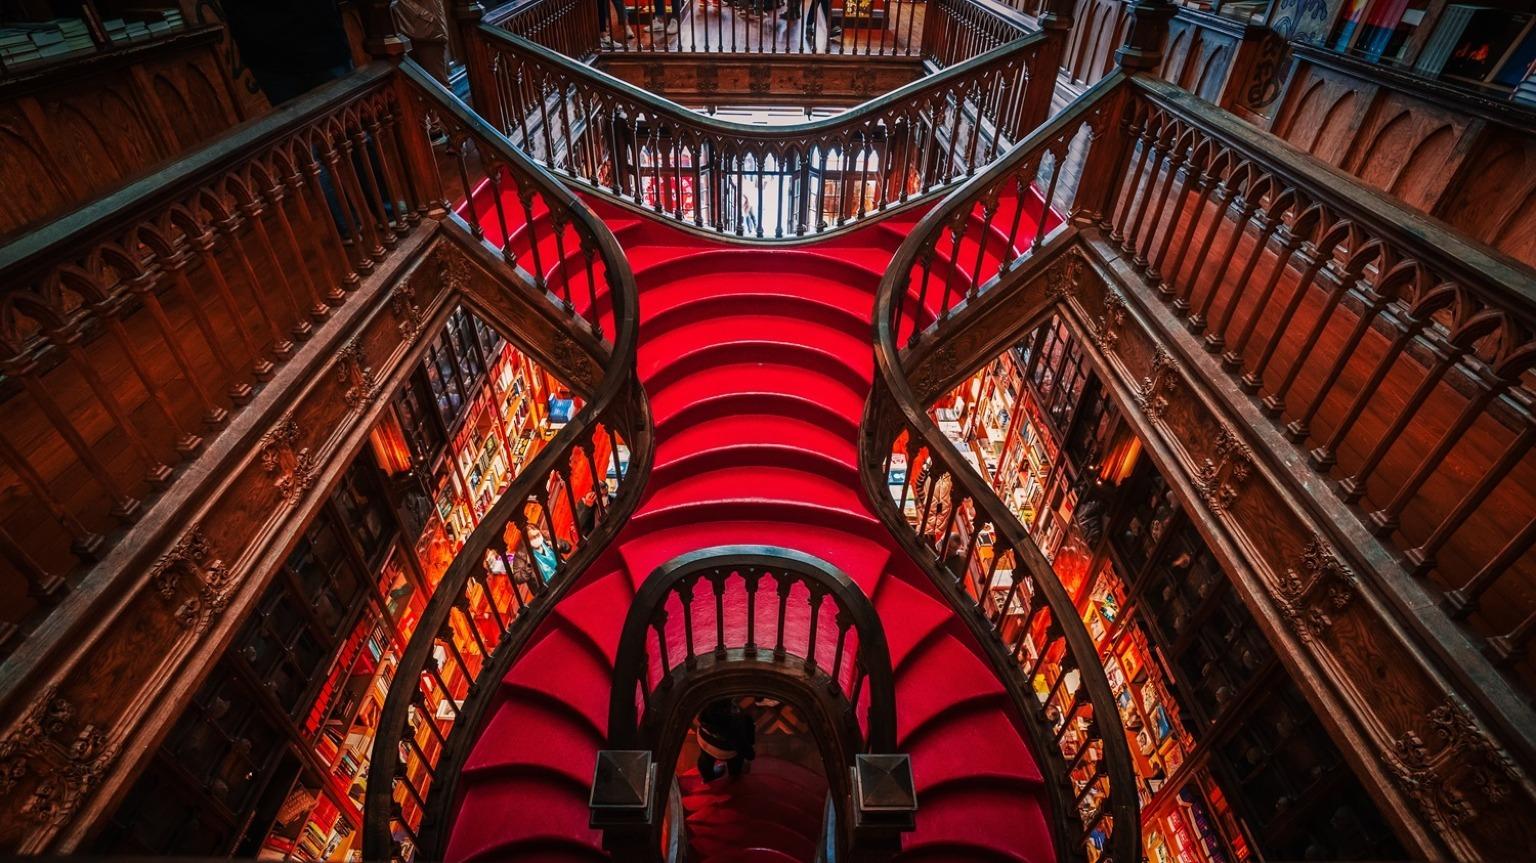 Montez l'escalier rouge fantaisiste de Livraria Lello, la librairie emblématique de Porto, où chaque marche fait écho à une histoire d'enchantement littéraire et de splendeur architecturale.